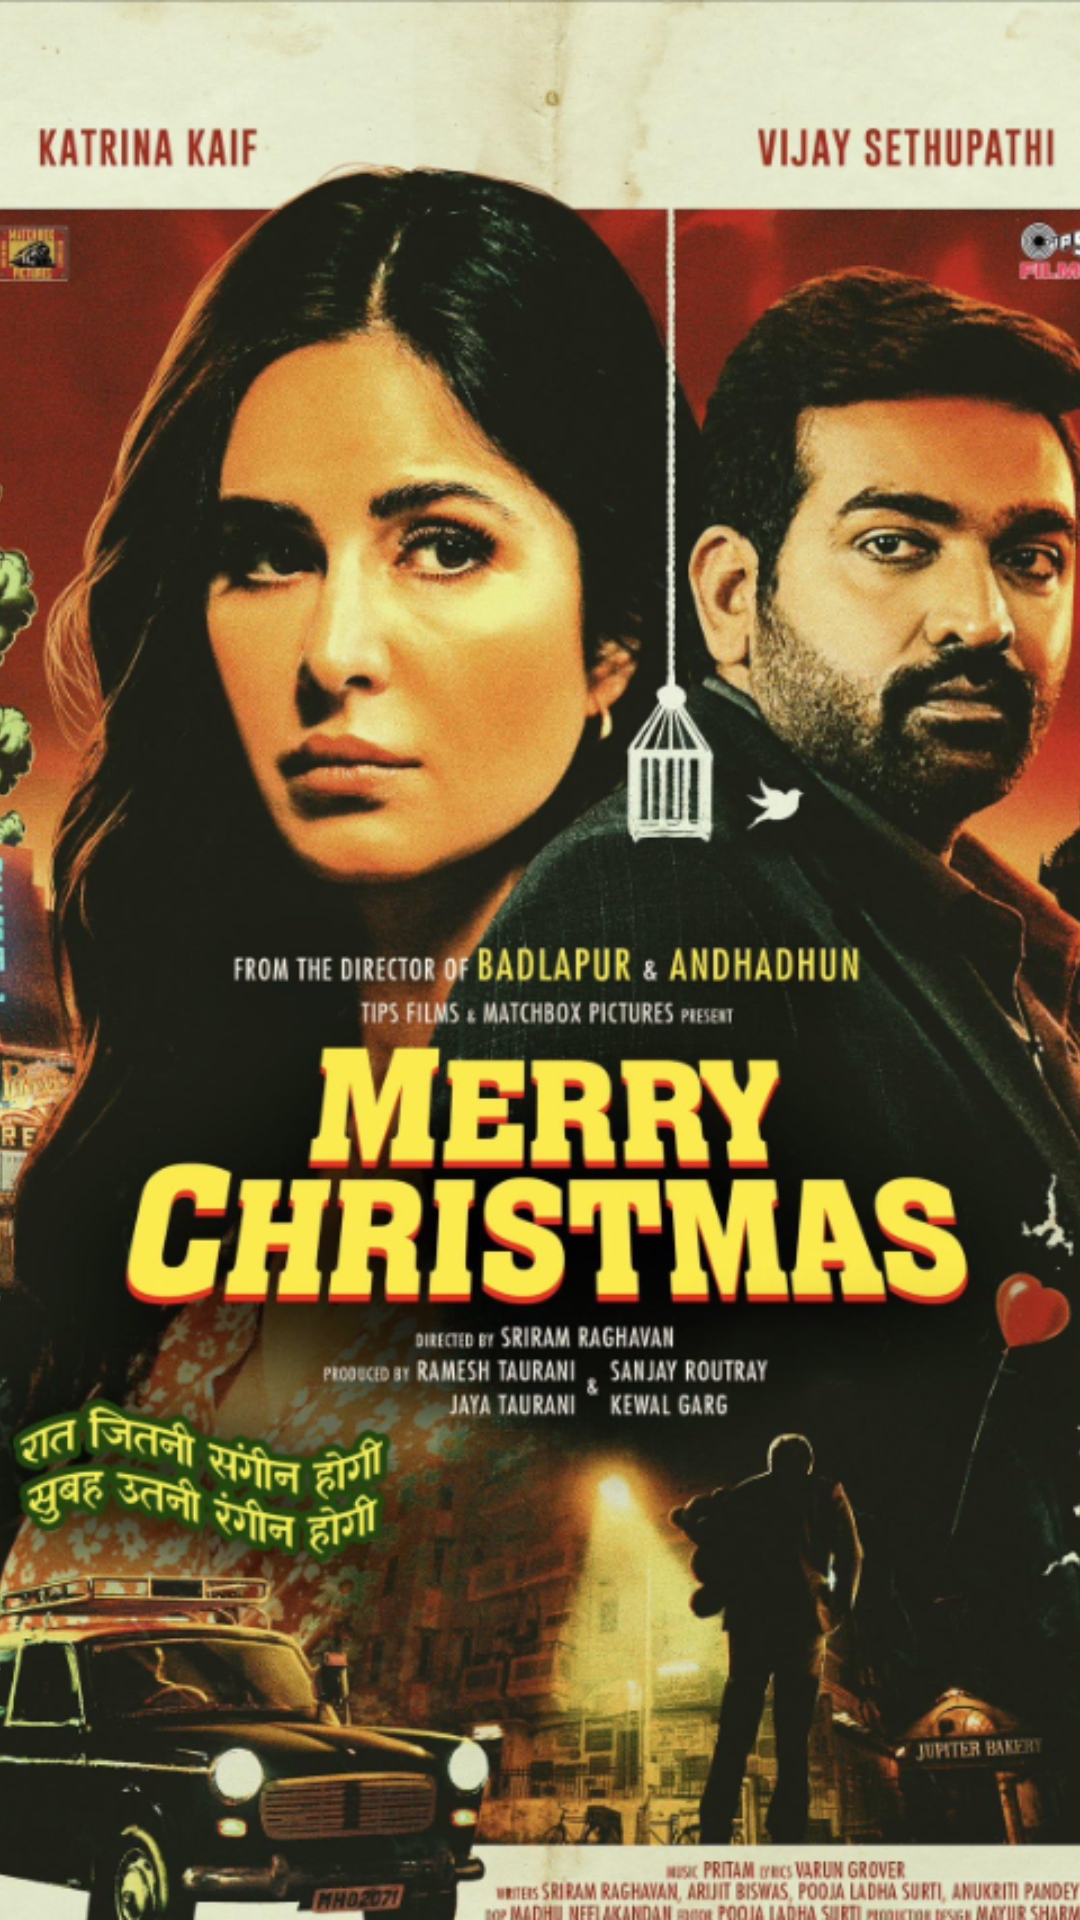 Before Merry Christmas, Sriram Raghavan's films based on twisted plots
